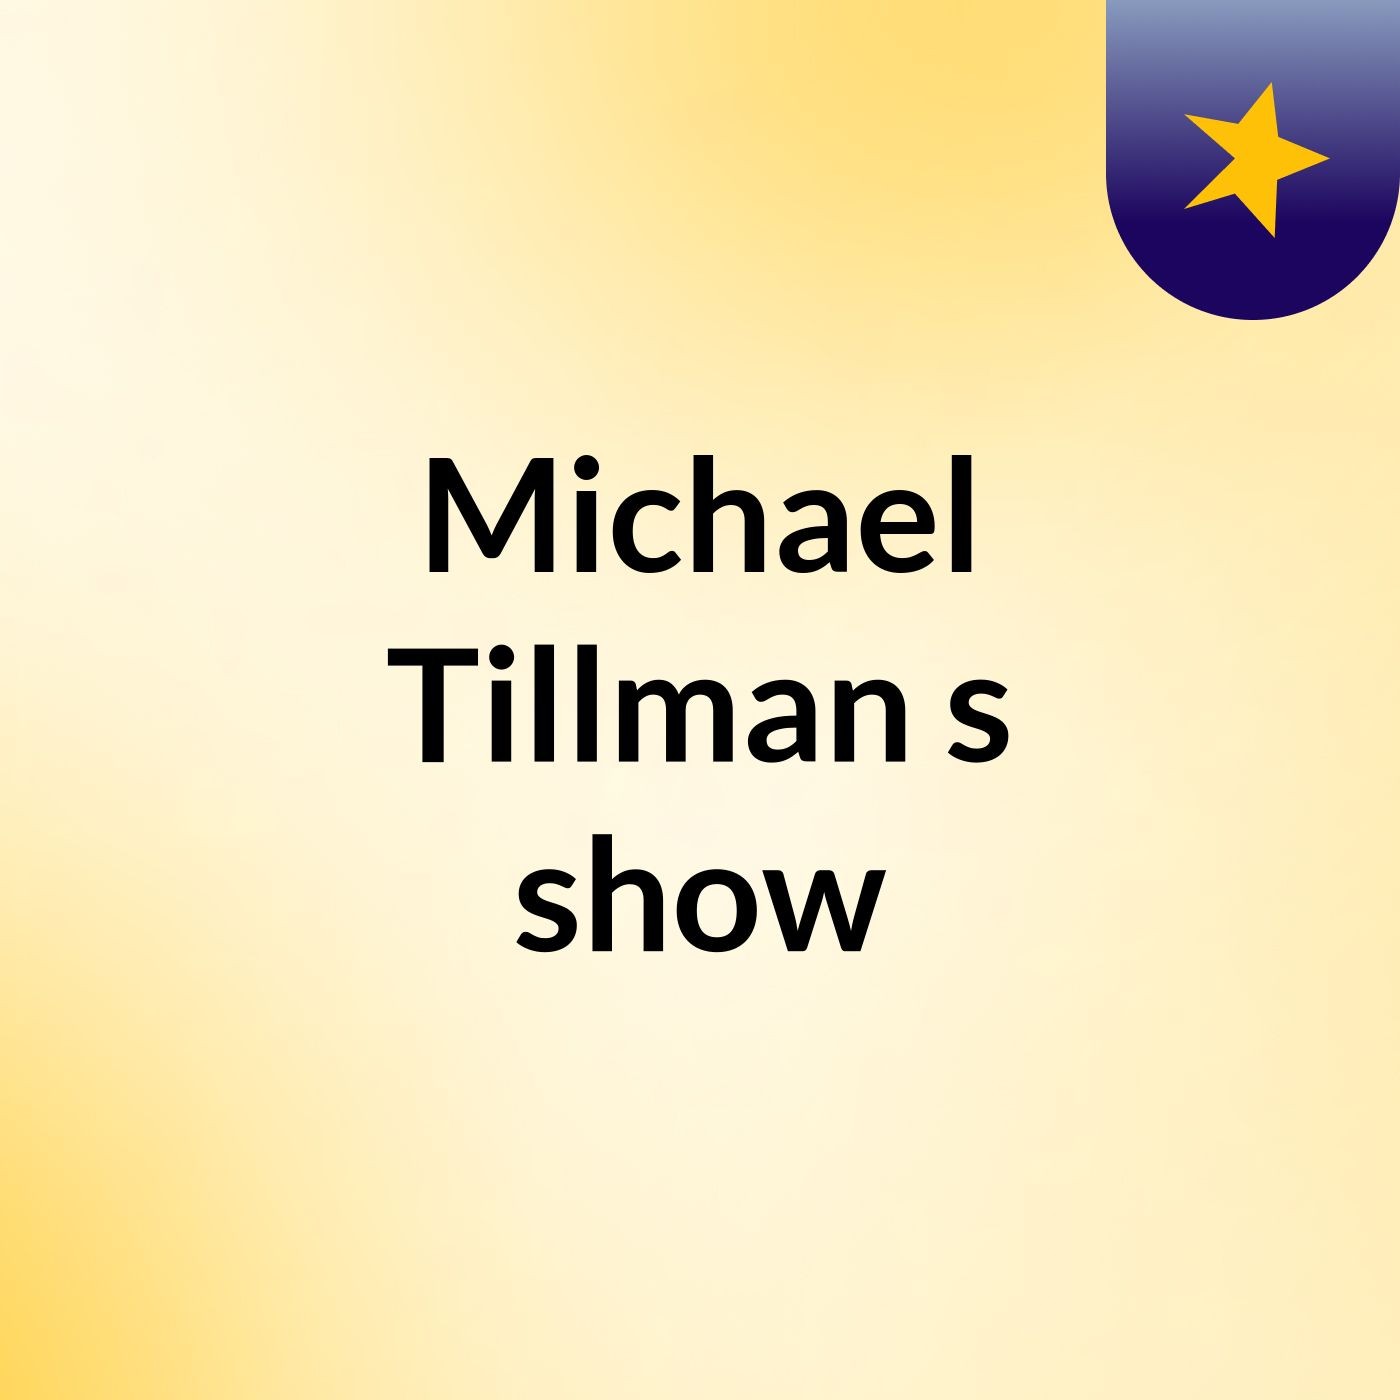 Michael Tillman's show